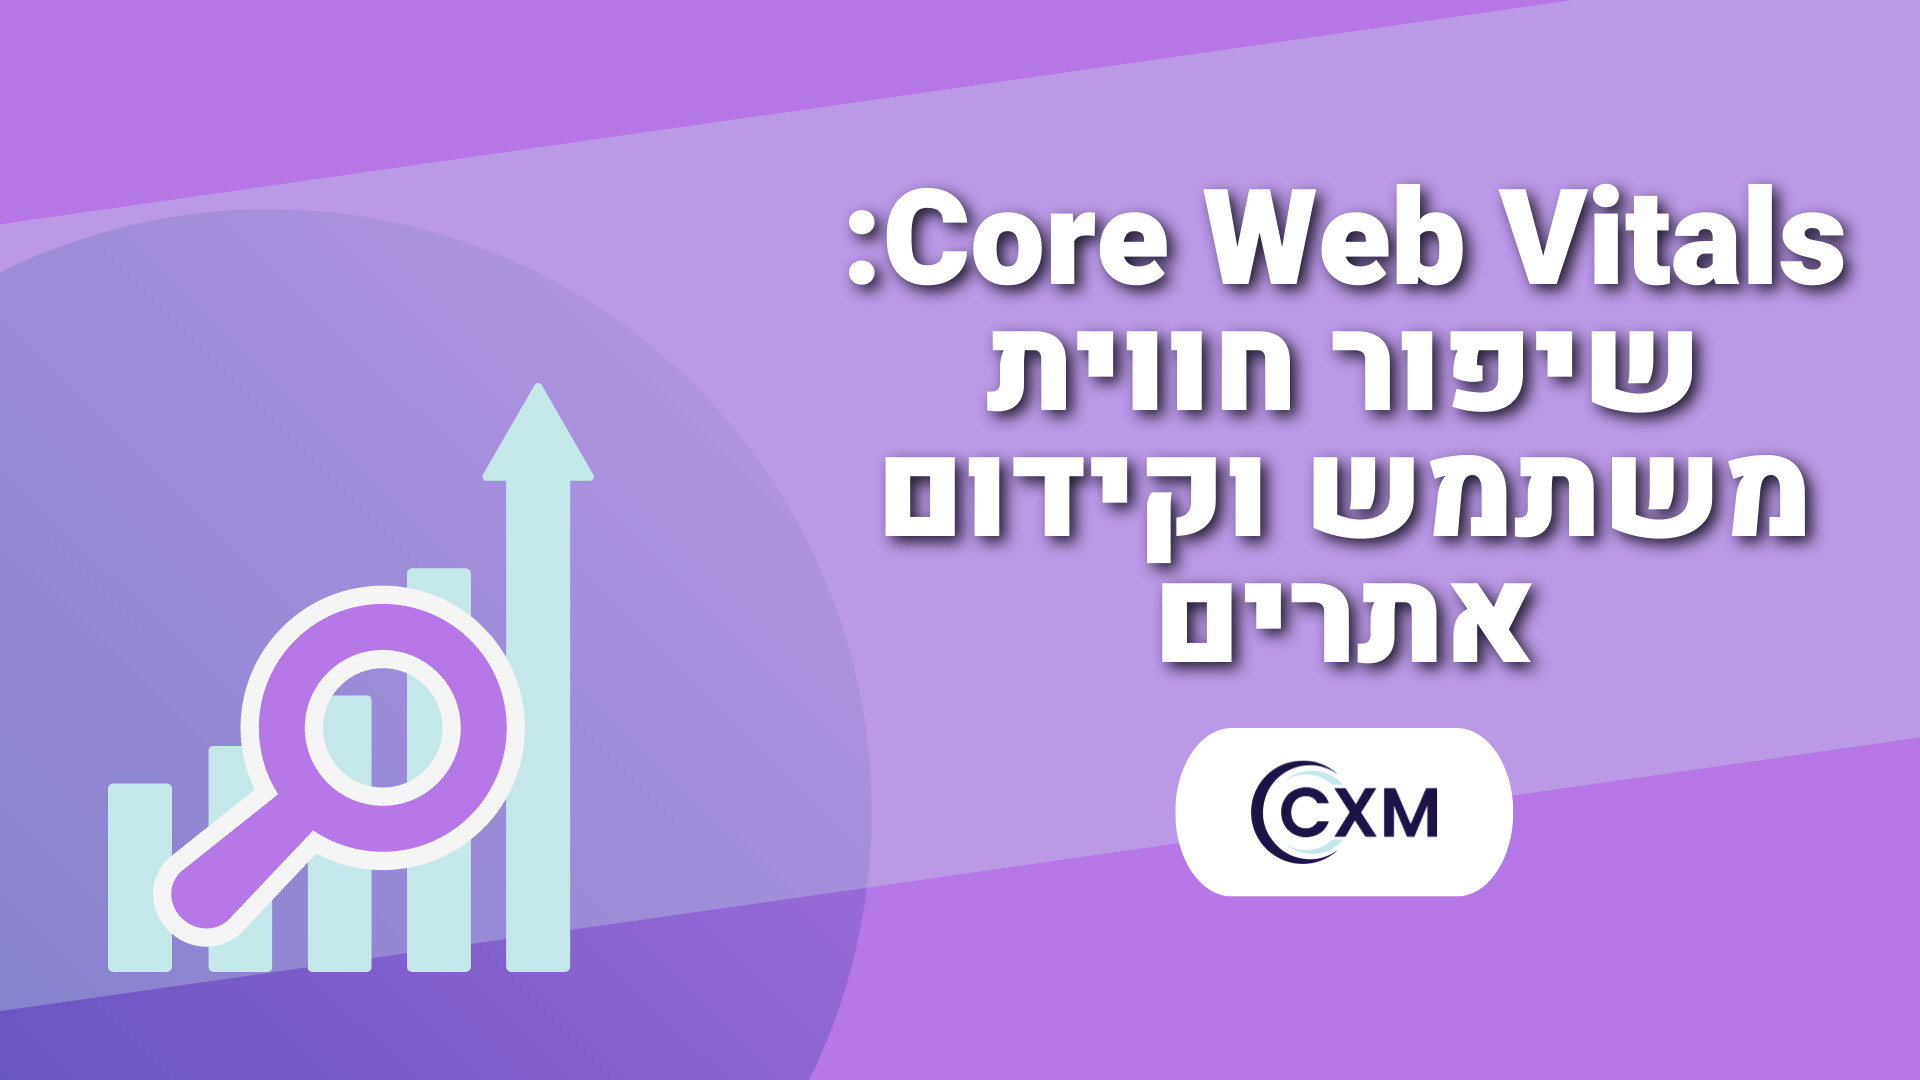 Core Web Vitals שיפור חווית משתמש וקידום אתרים